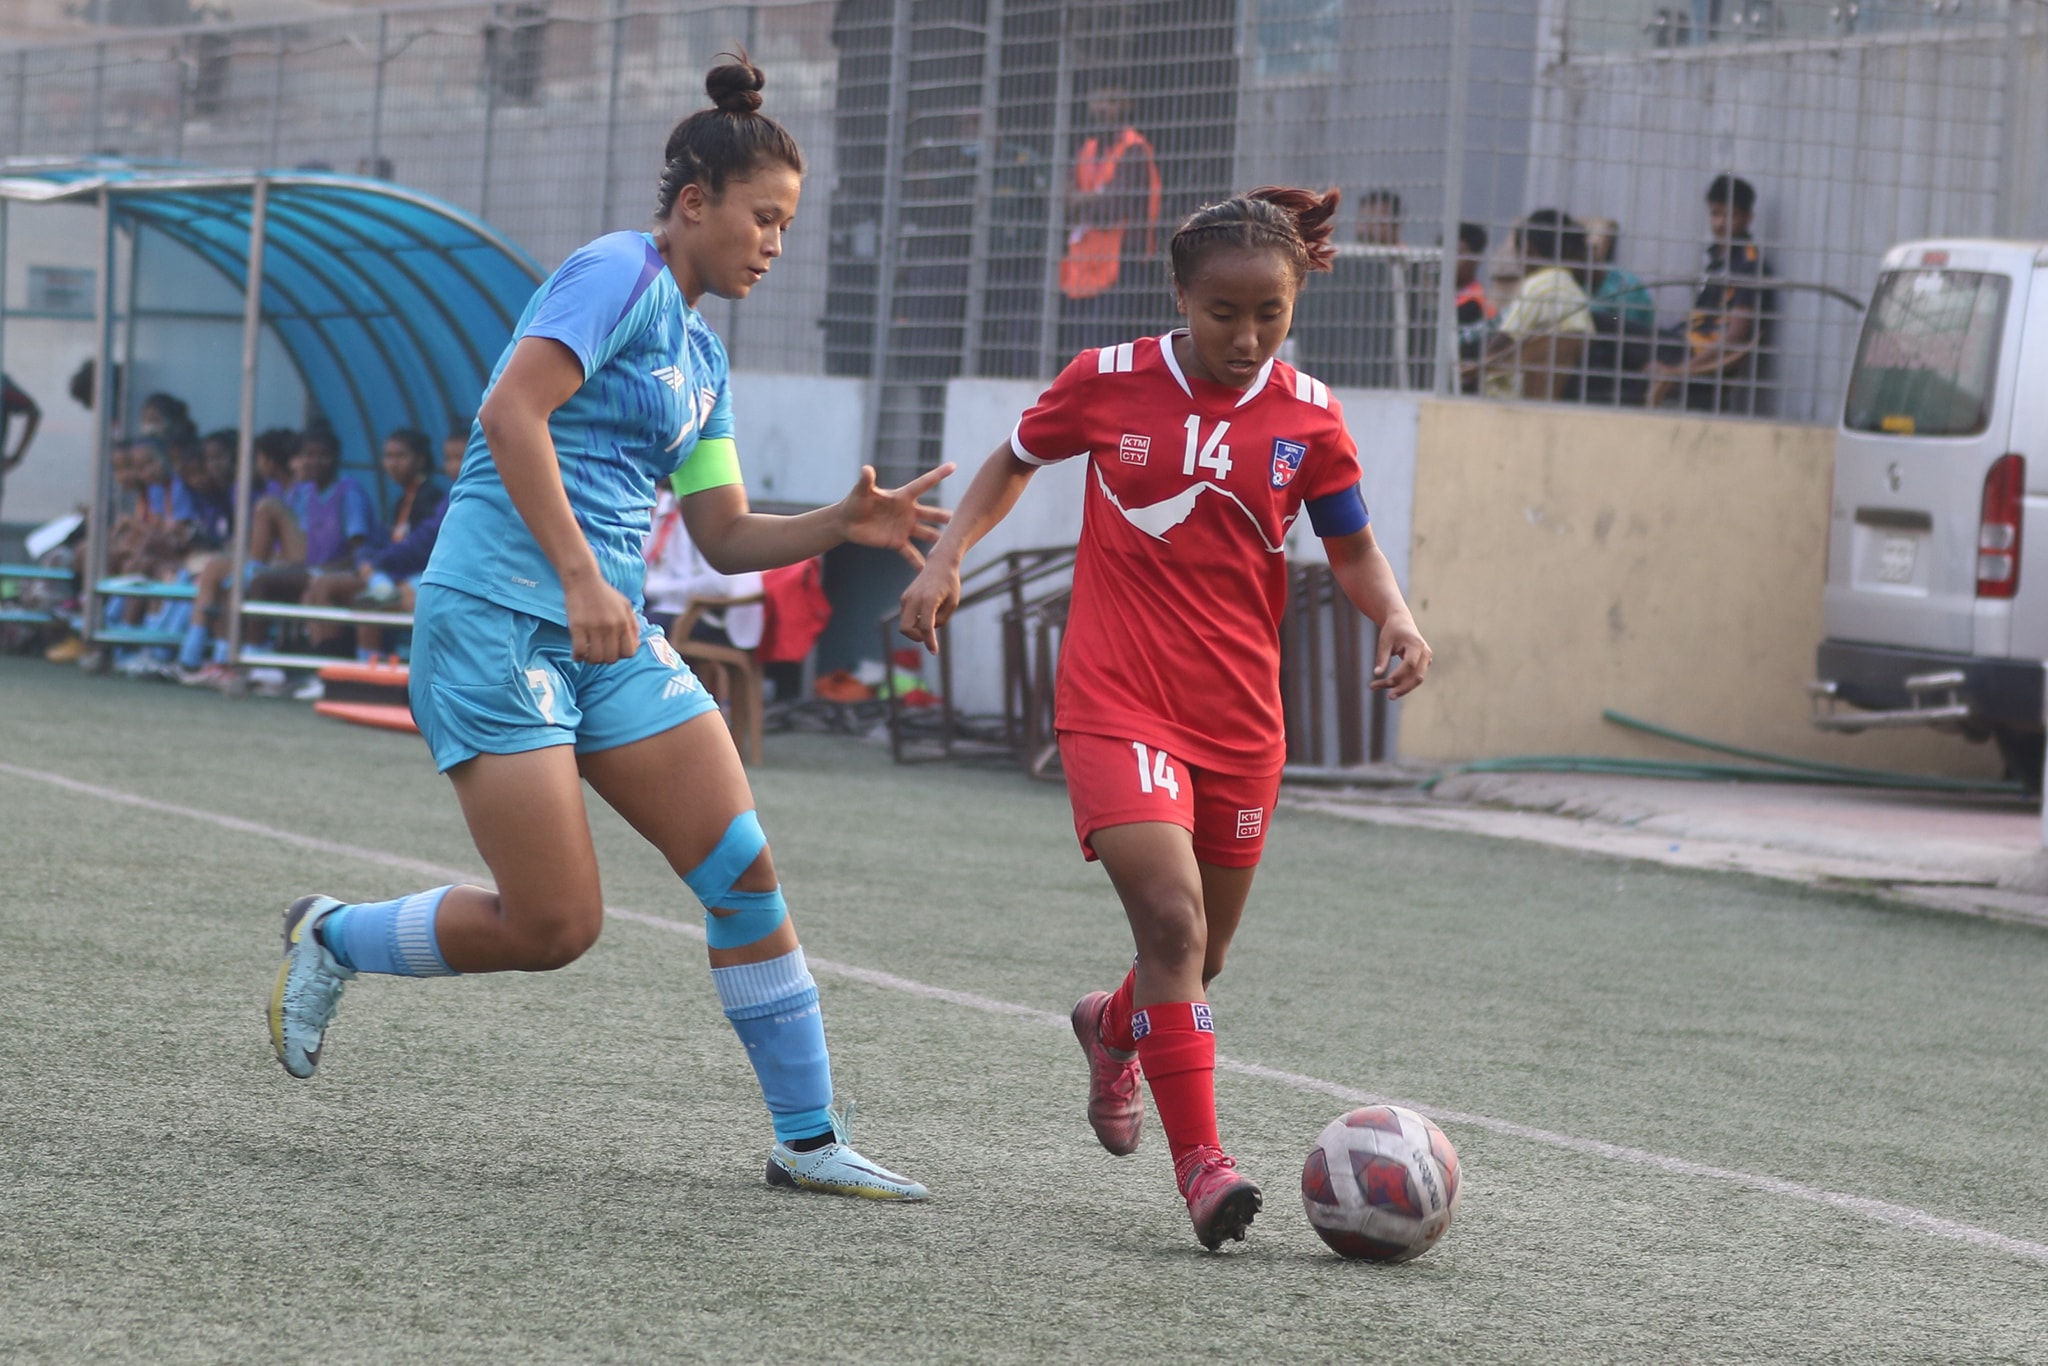 भारतलाई तीन गोलले हराउँदै नेपाल महिला यु–२० च्याम्पियनपको फाइनलमा